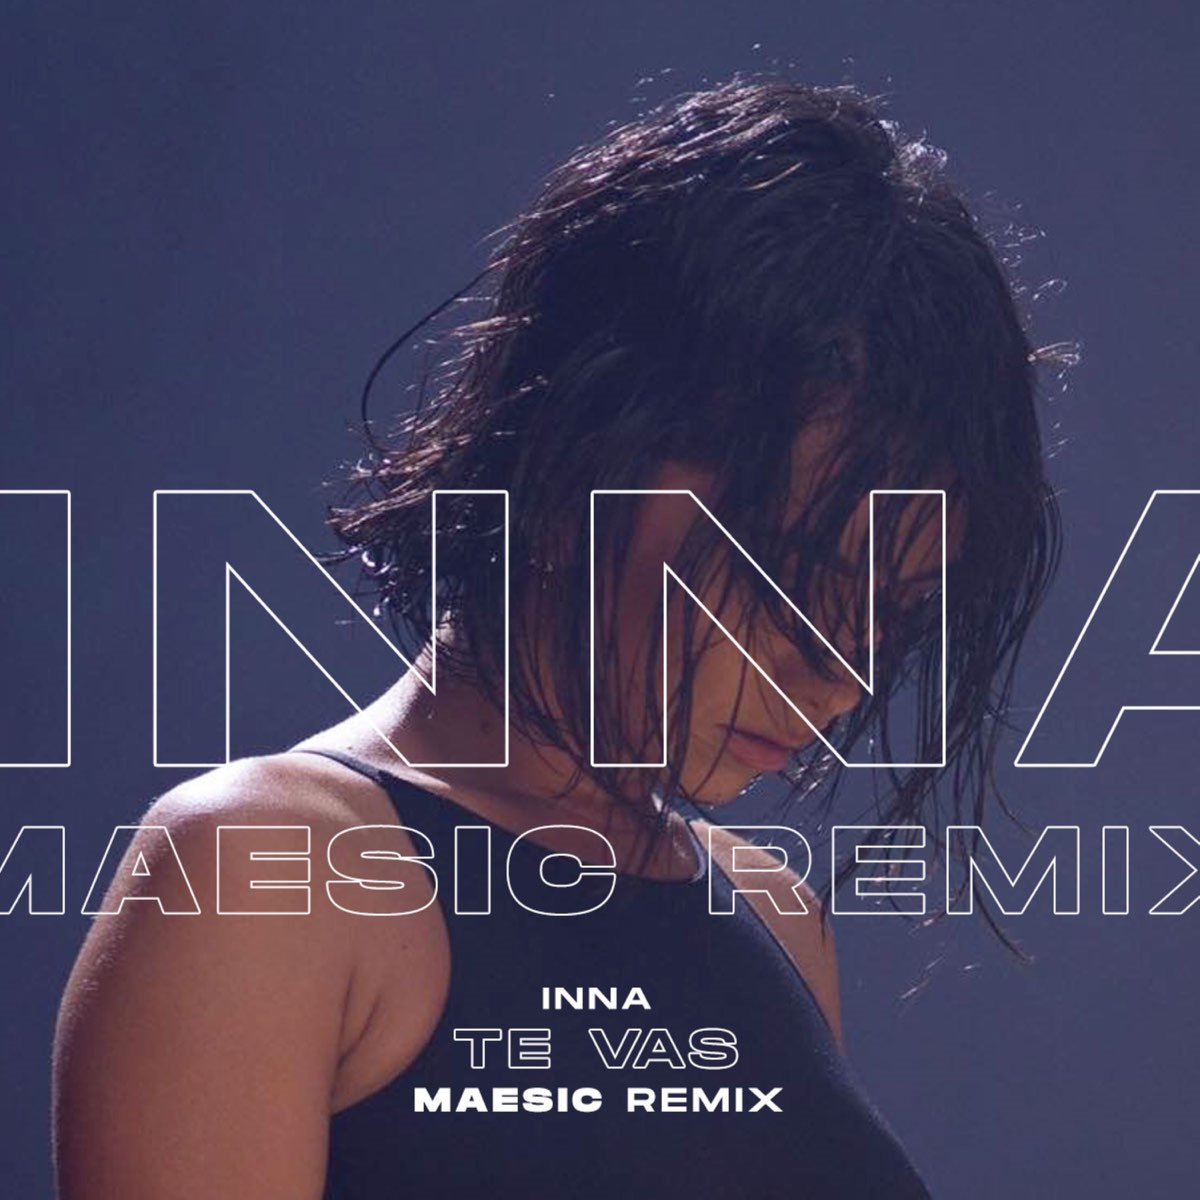 Te Vas (Maesic Remix) - Single by Inna & Maesic on Apple Music